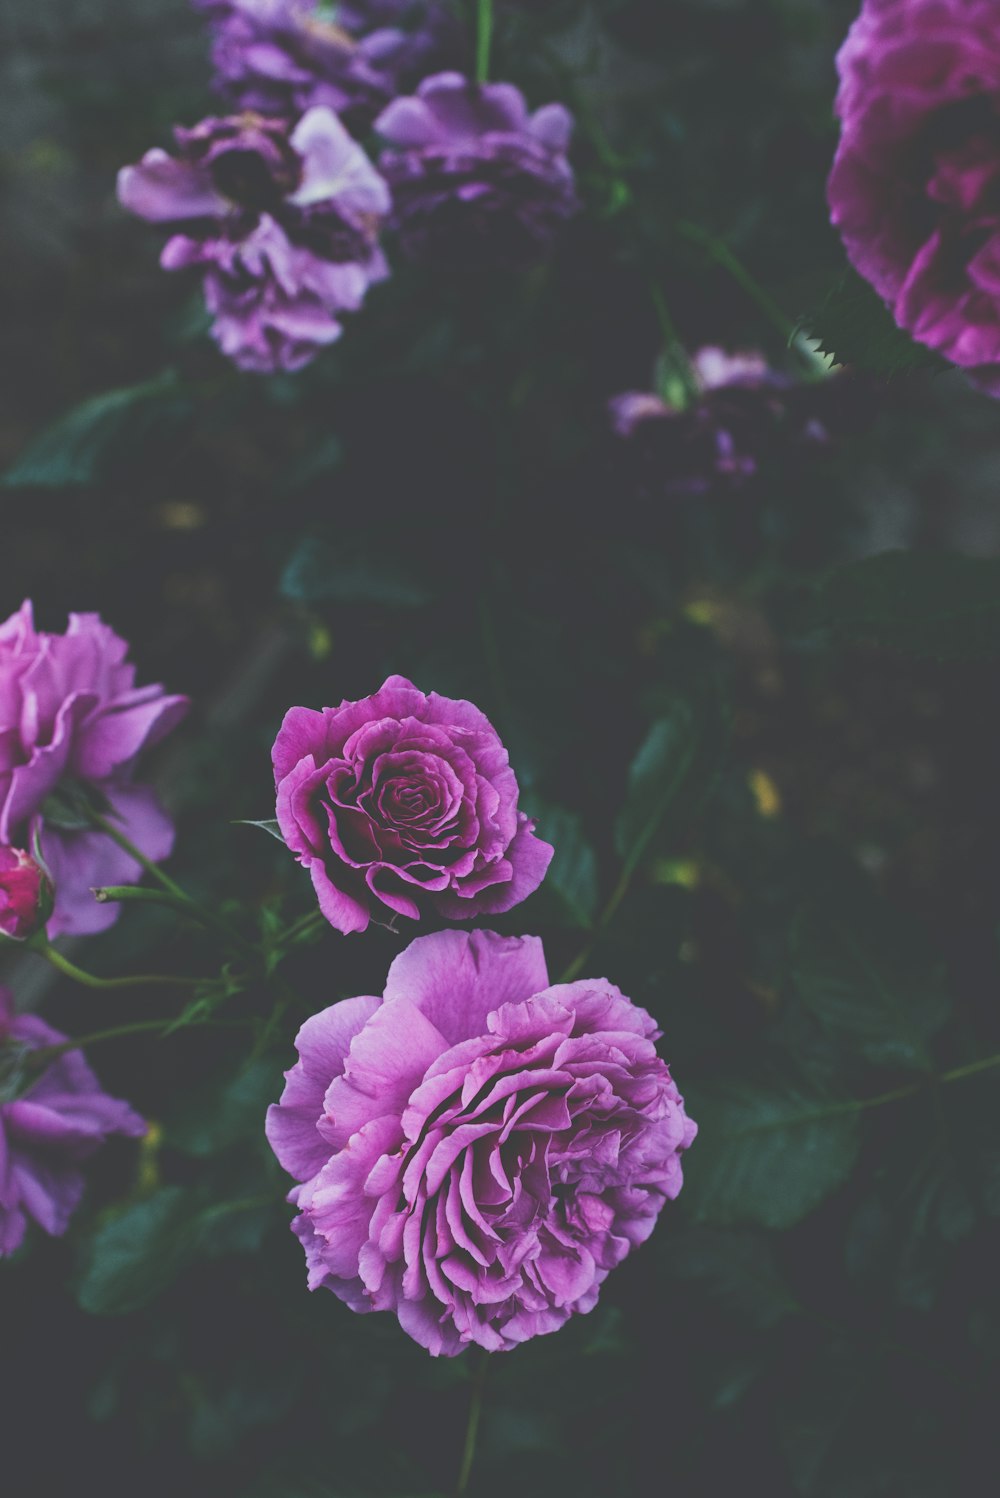 natural purple rose